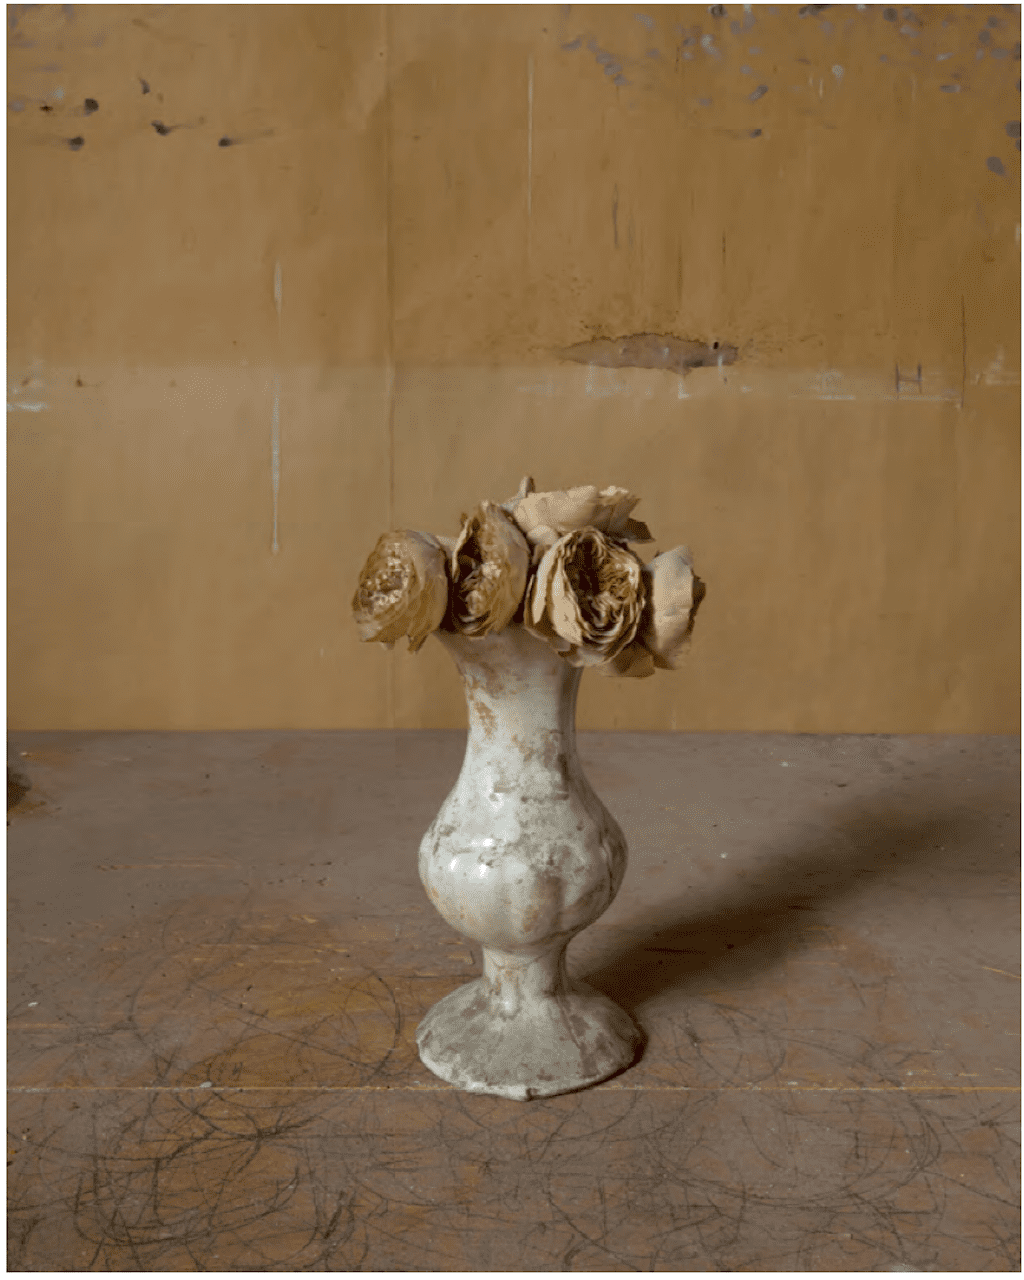 Joel Meyerowitz Morandi’s Objects, Flowers in Vase, 2015 Stampa a pigmenti d'archivio 20 x 16 pollici Firmata ed edita sul retro Da un'edizione di 10 esemplari